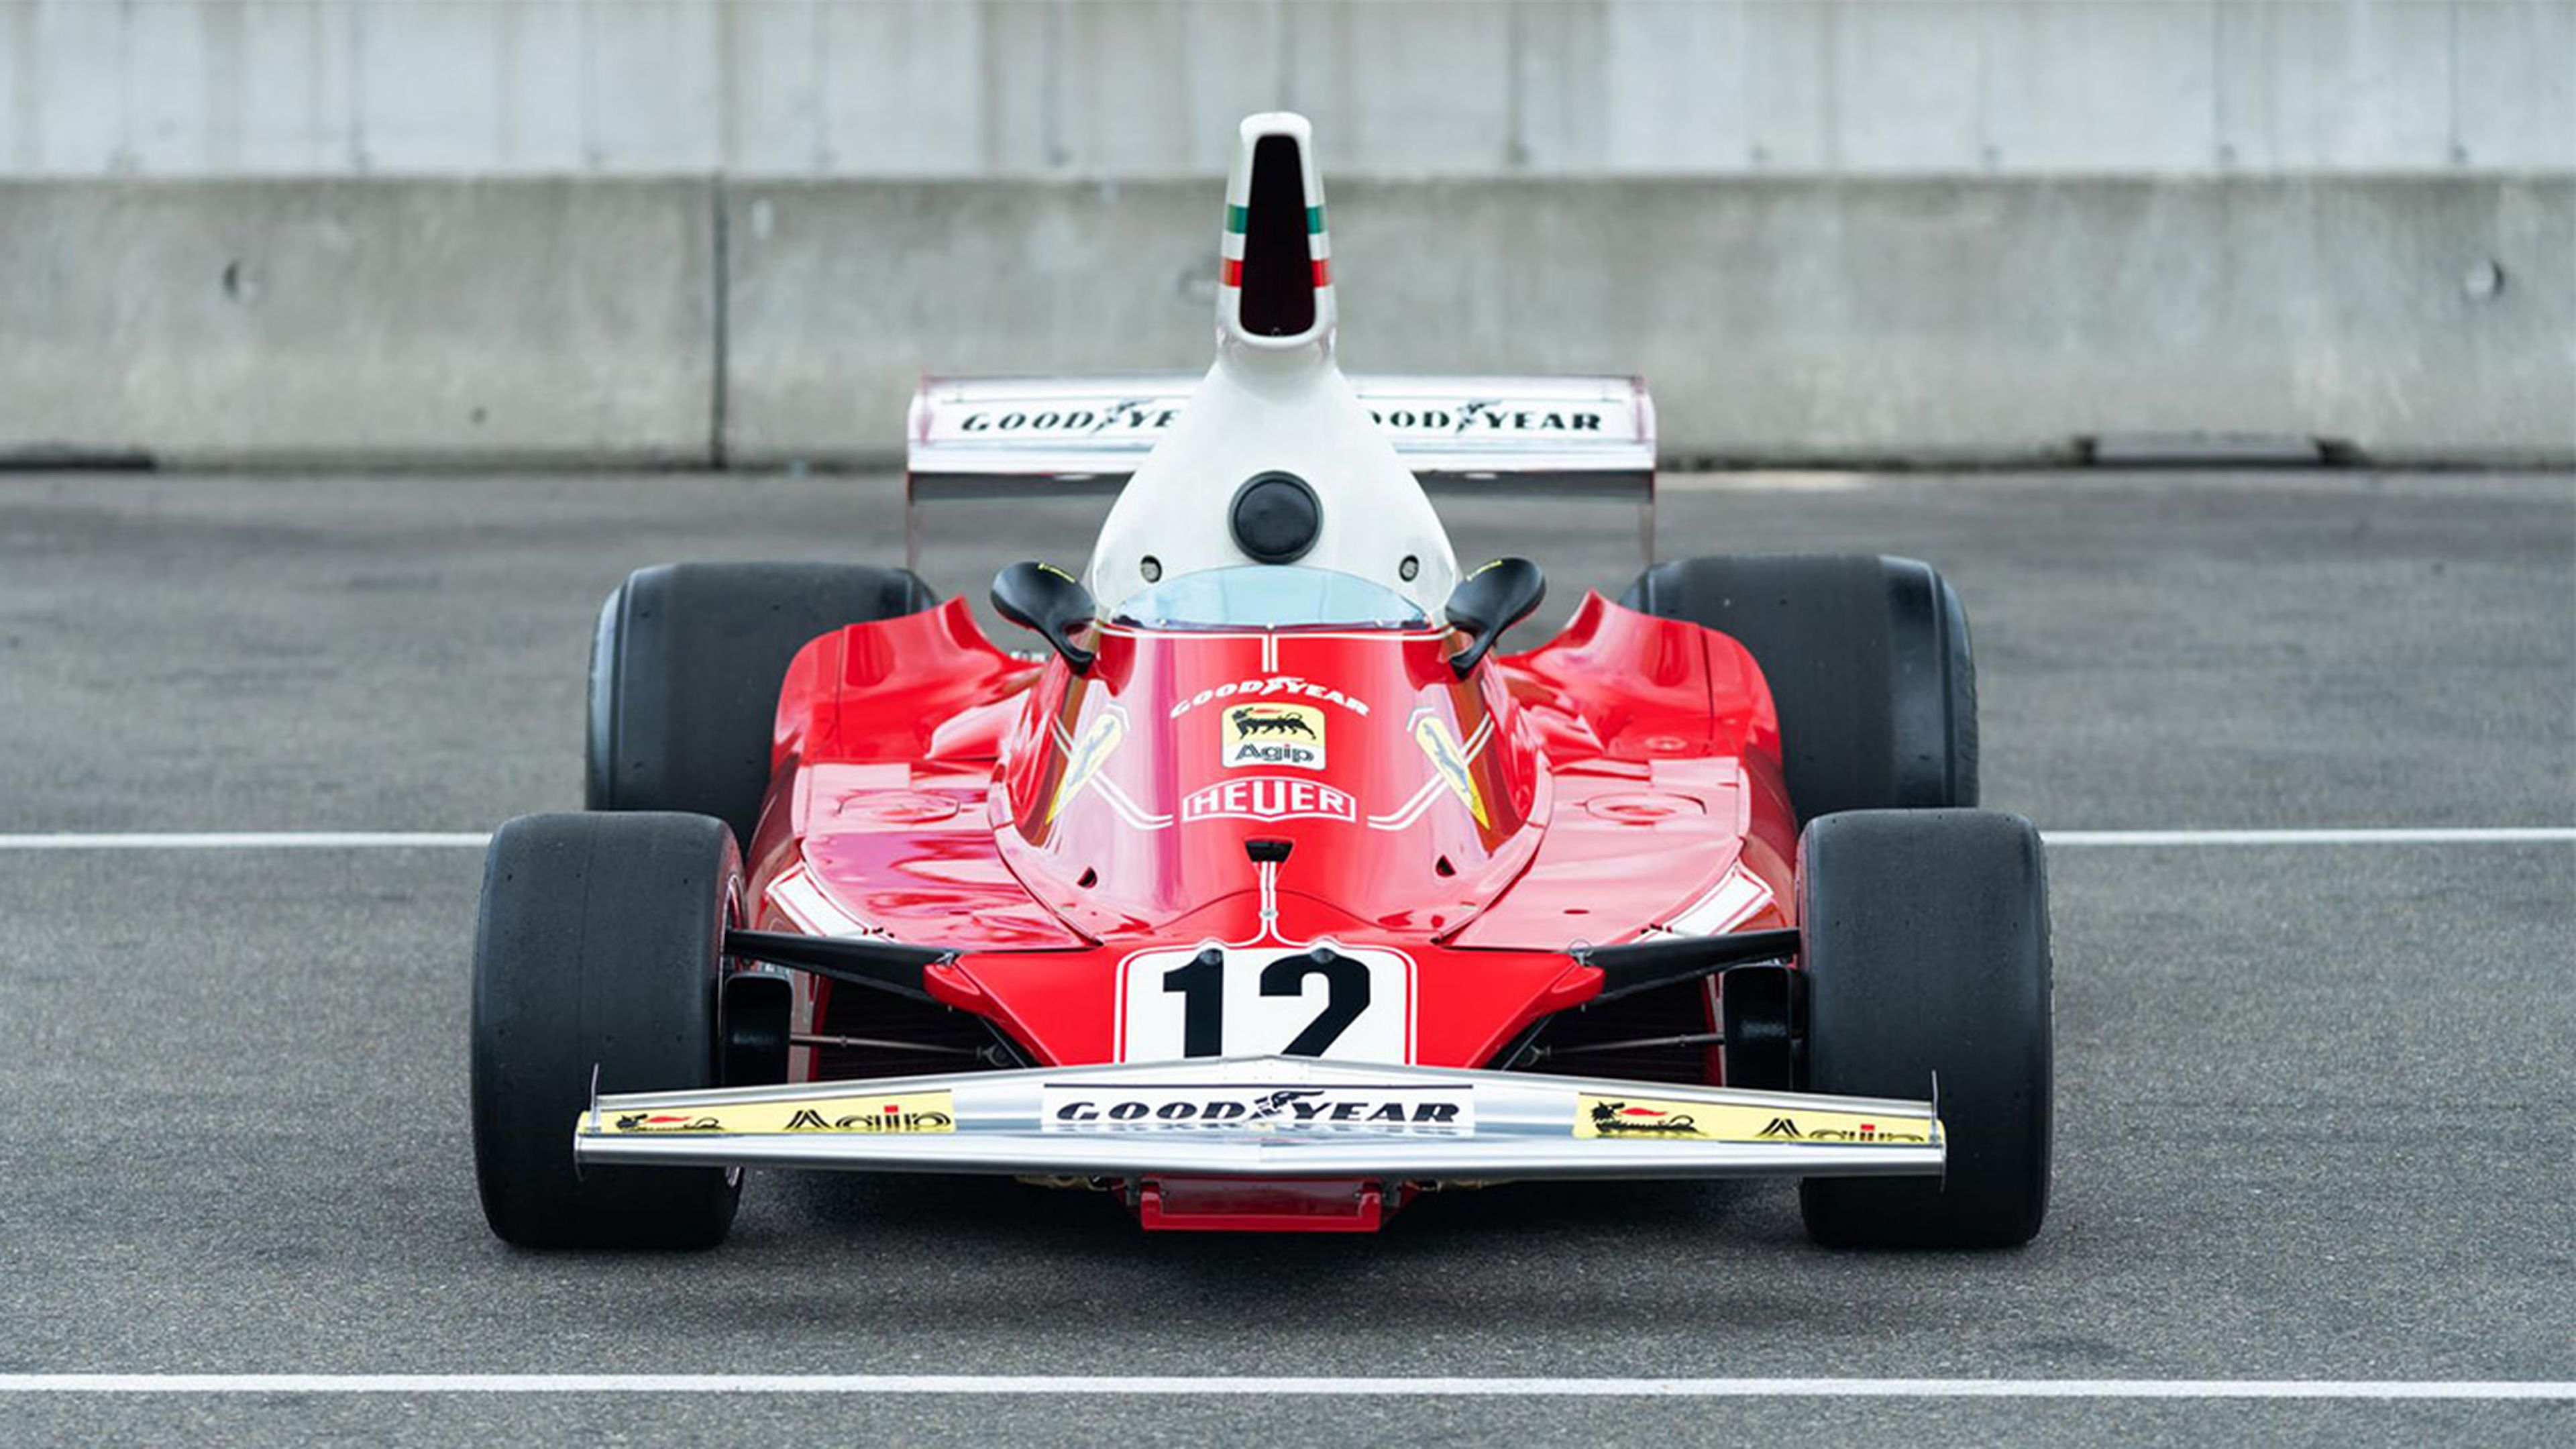 Coche F1 Lauda frontal